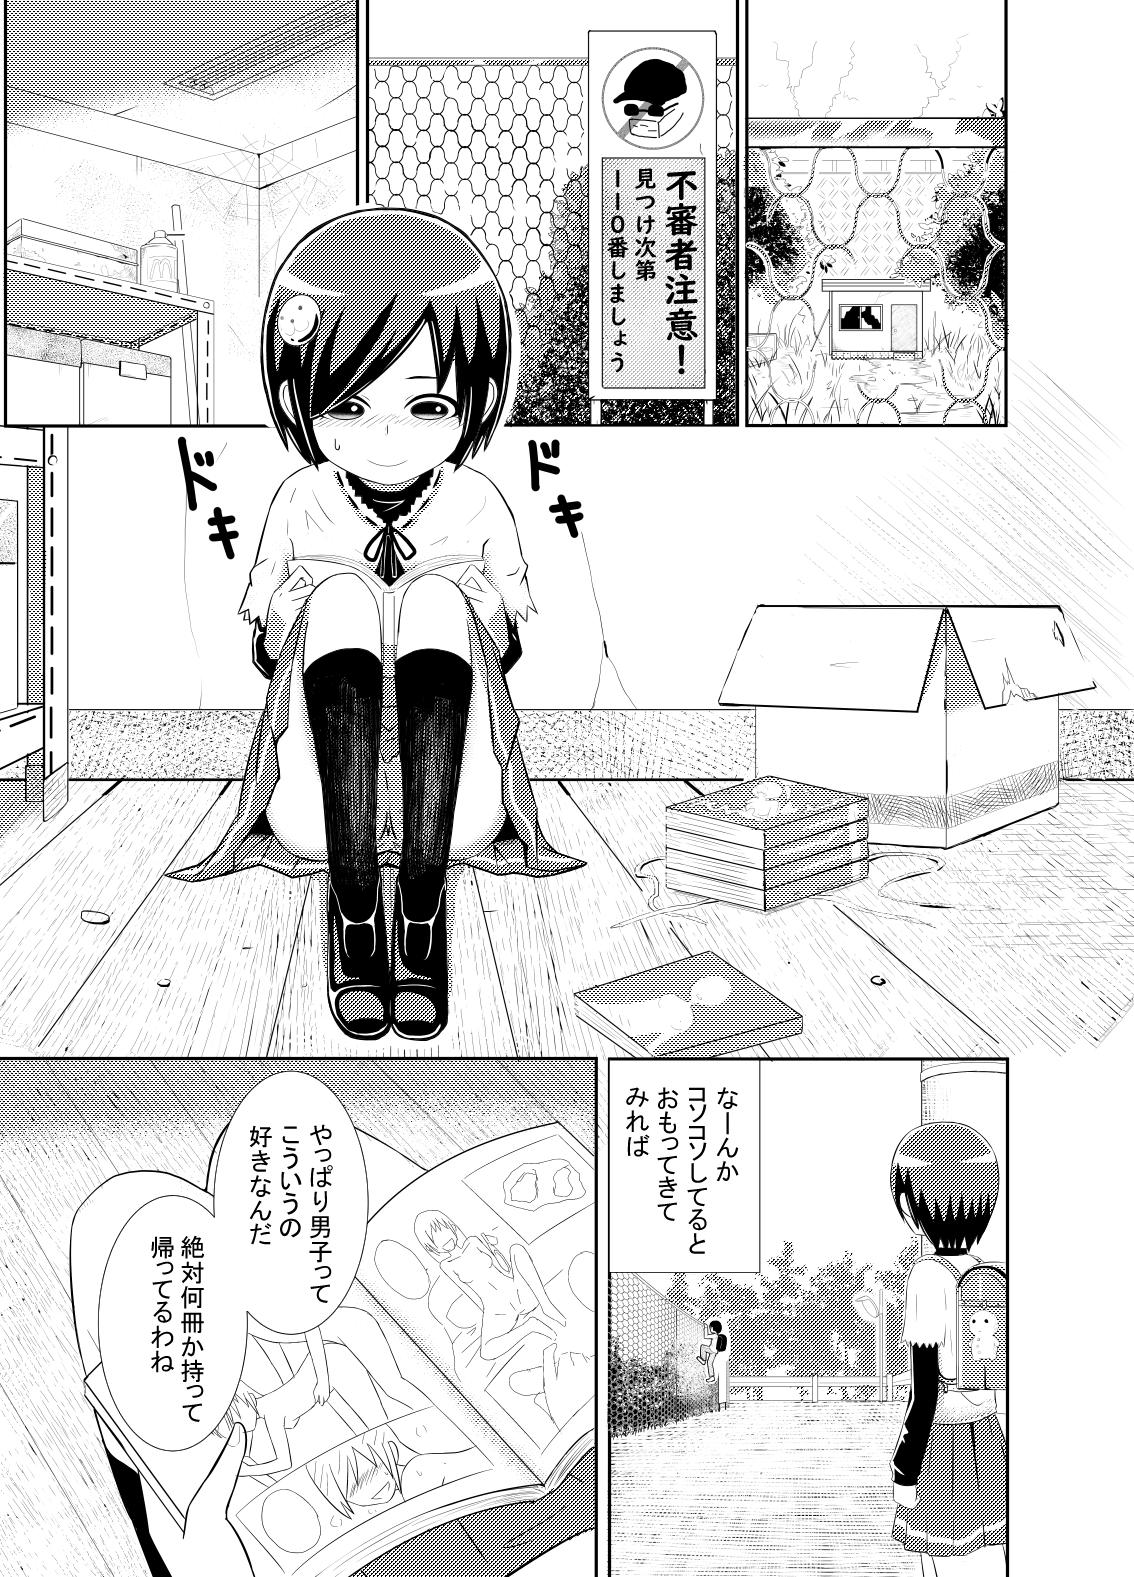 Kawaisou-kei Manga 1